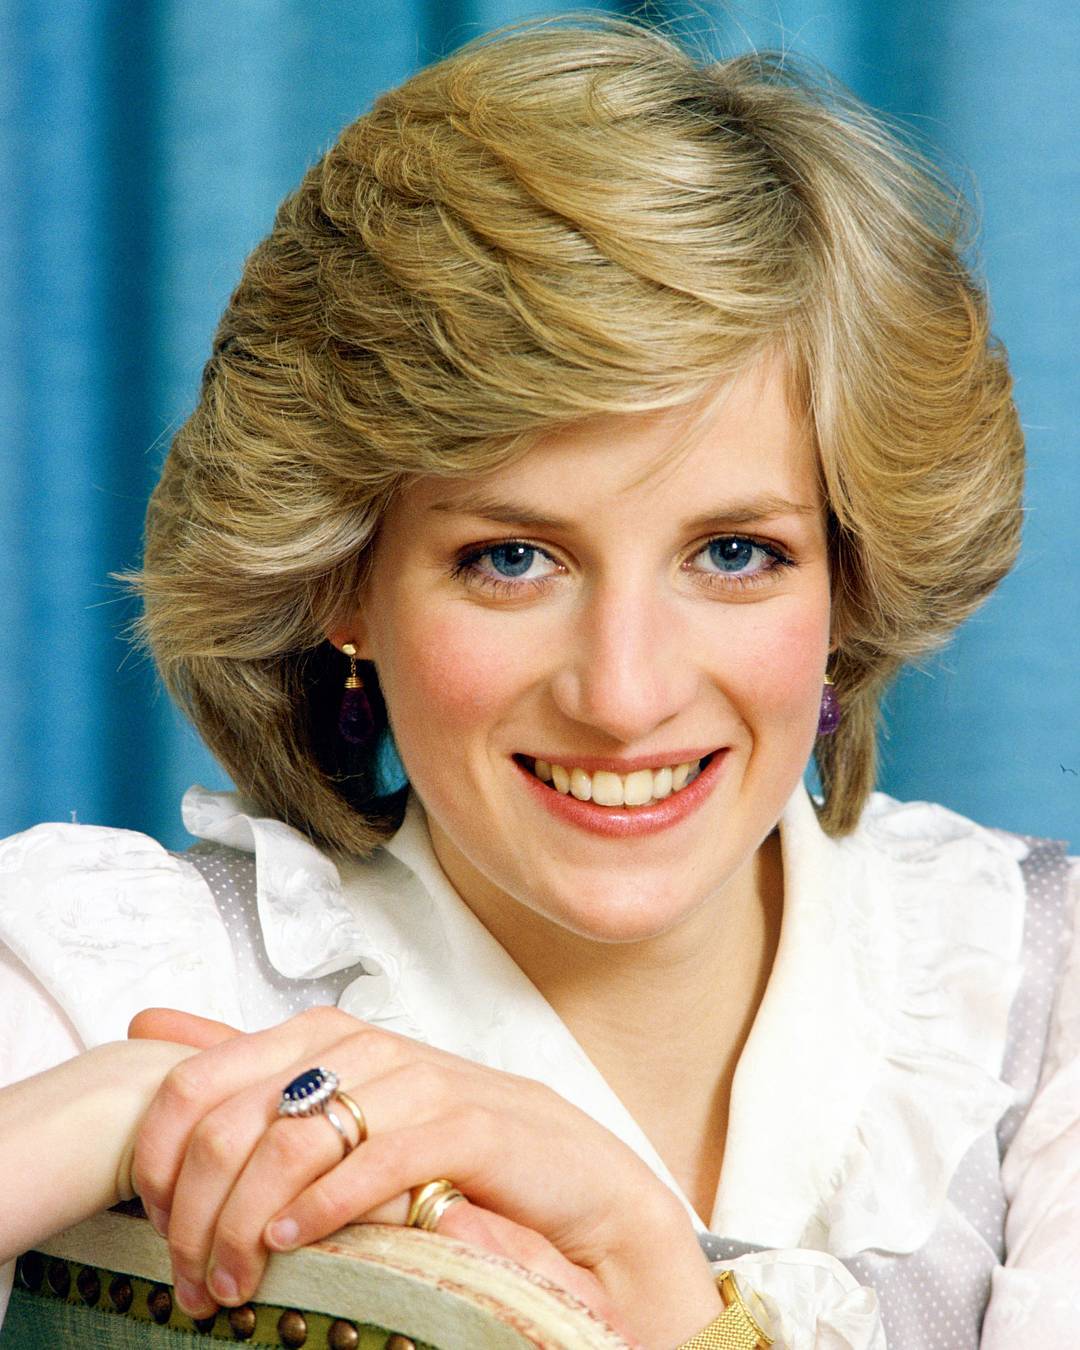 Принцесса Диана (Princess Diana)- 1 июля, 1961 * 31 августа 1997. 